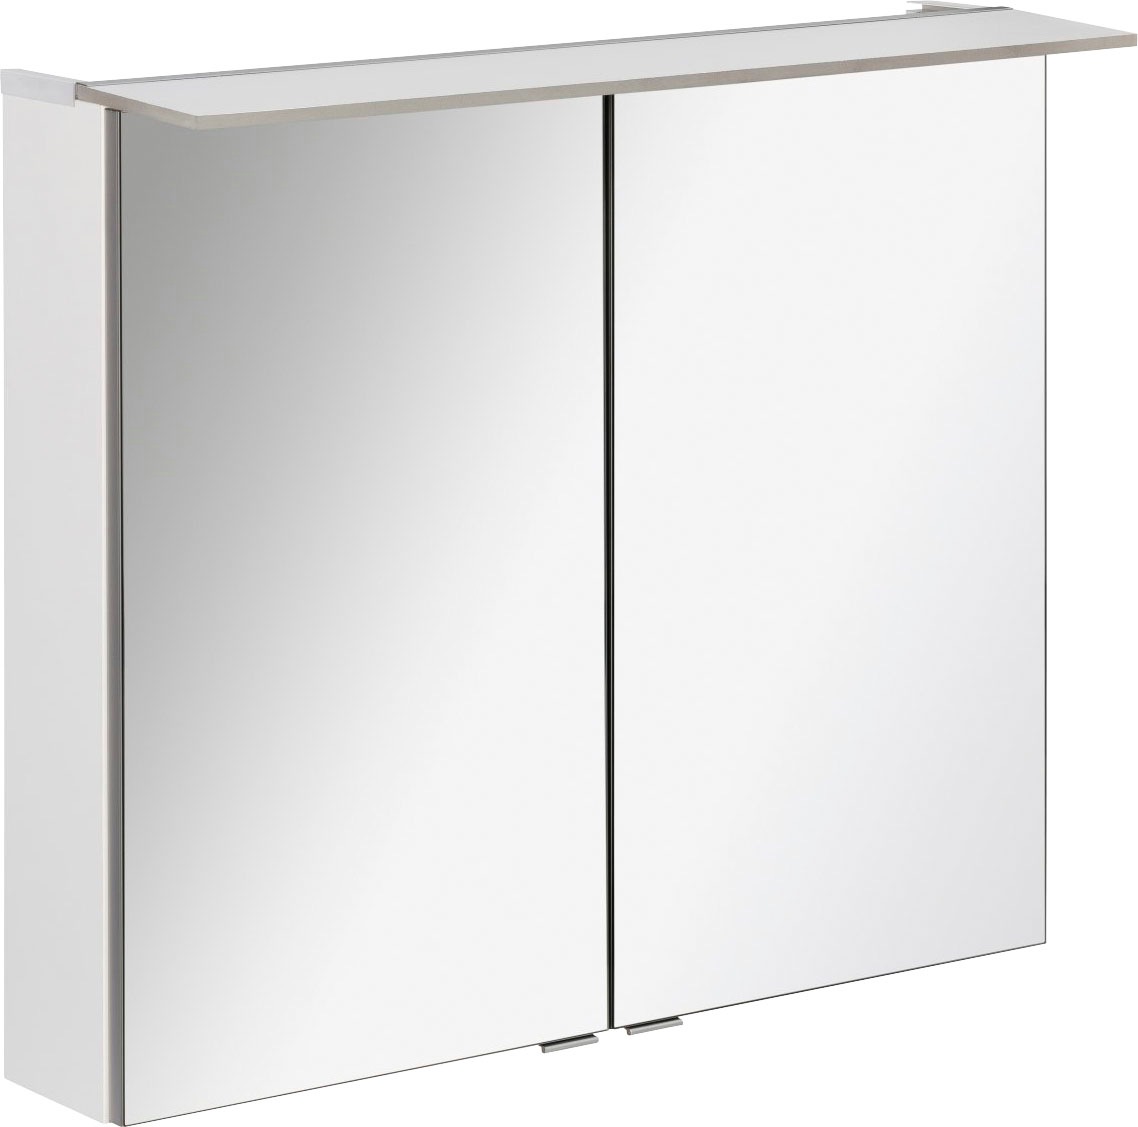 FACKELMANN Spiegelschrank "PE 80 - weiß", Badmöbel Breite 80 cm, mit 2 Türen doppelseitig verspiegelt